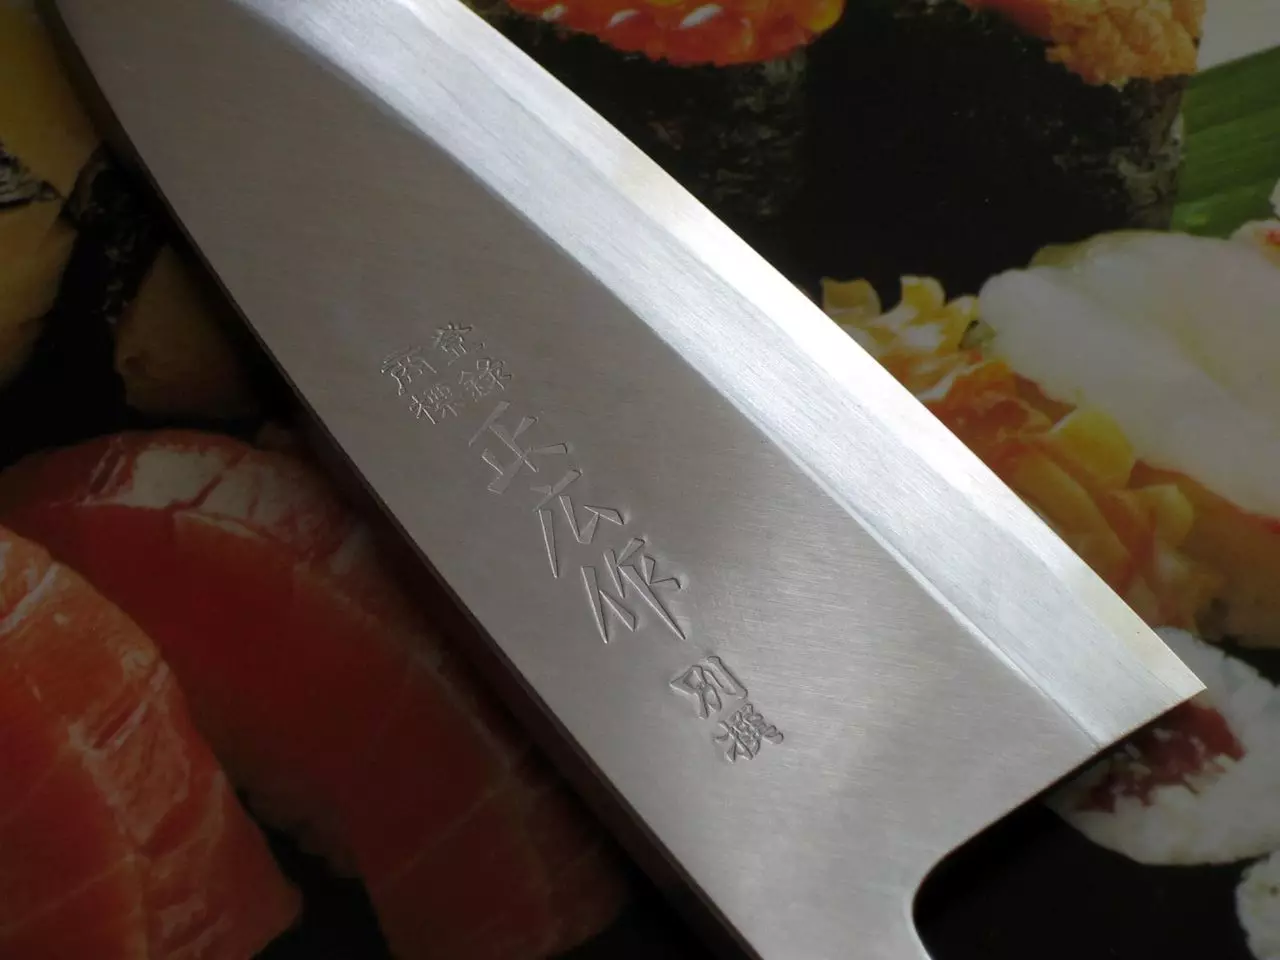 جاپانی باورچی خانے کے چاقو (35 فوٹو): کیومو چاقو کی خصوصیات اور دیگر مینوفیکچررز چاقو. نکیری اور ڈیب، سینٹوکو اور دیگر پرجاتیوں. سیٹ کا انتخاب 24998_18